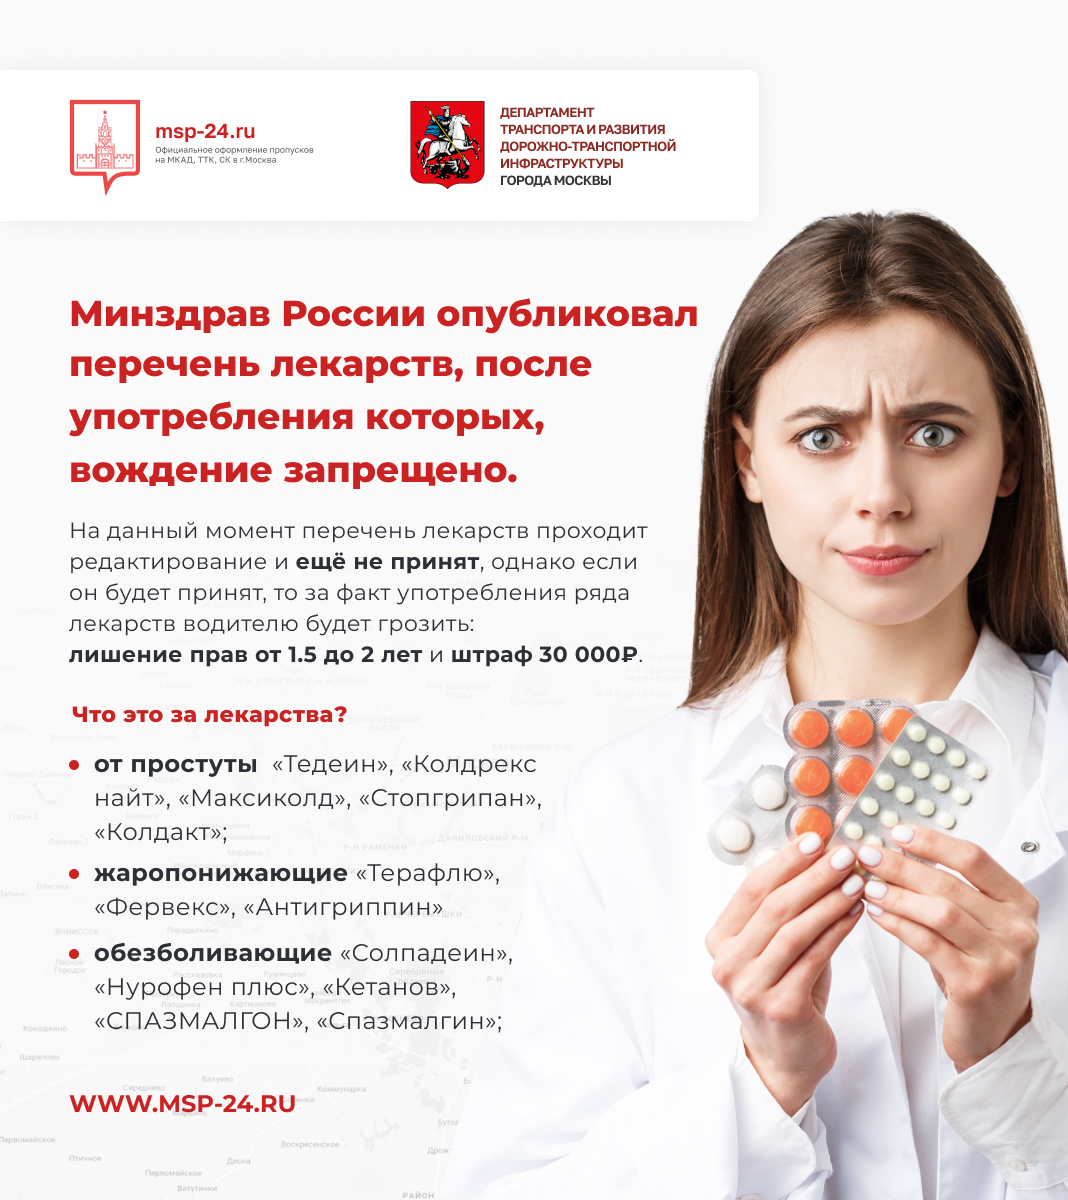 Министерство здравоохранения РФ опубликовало перечень лекарств, запрещённых к вождению авто